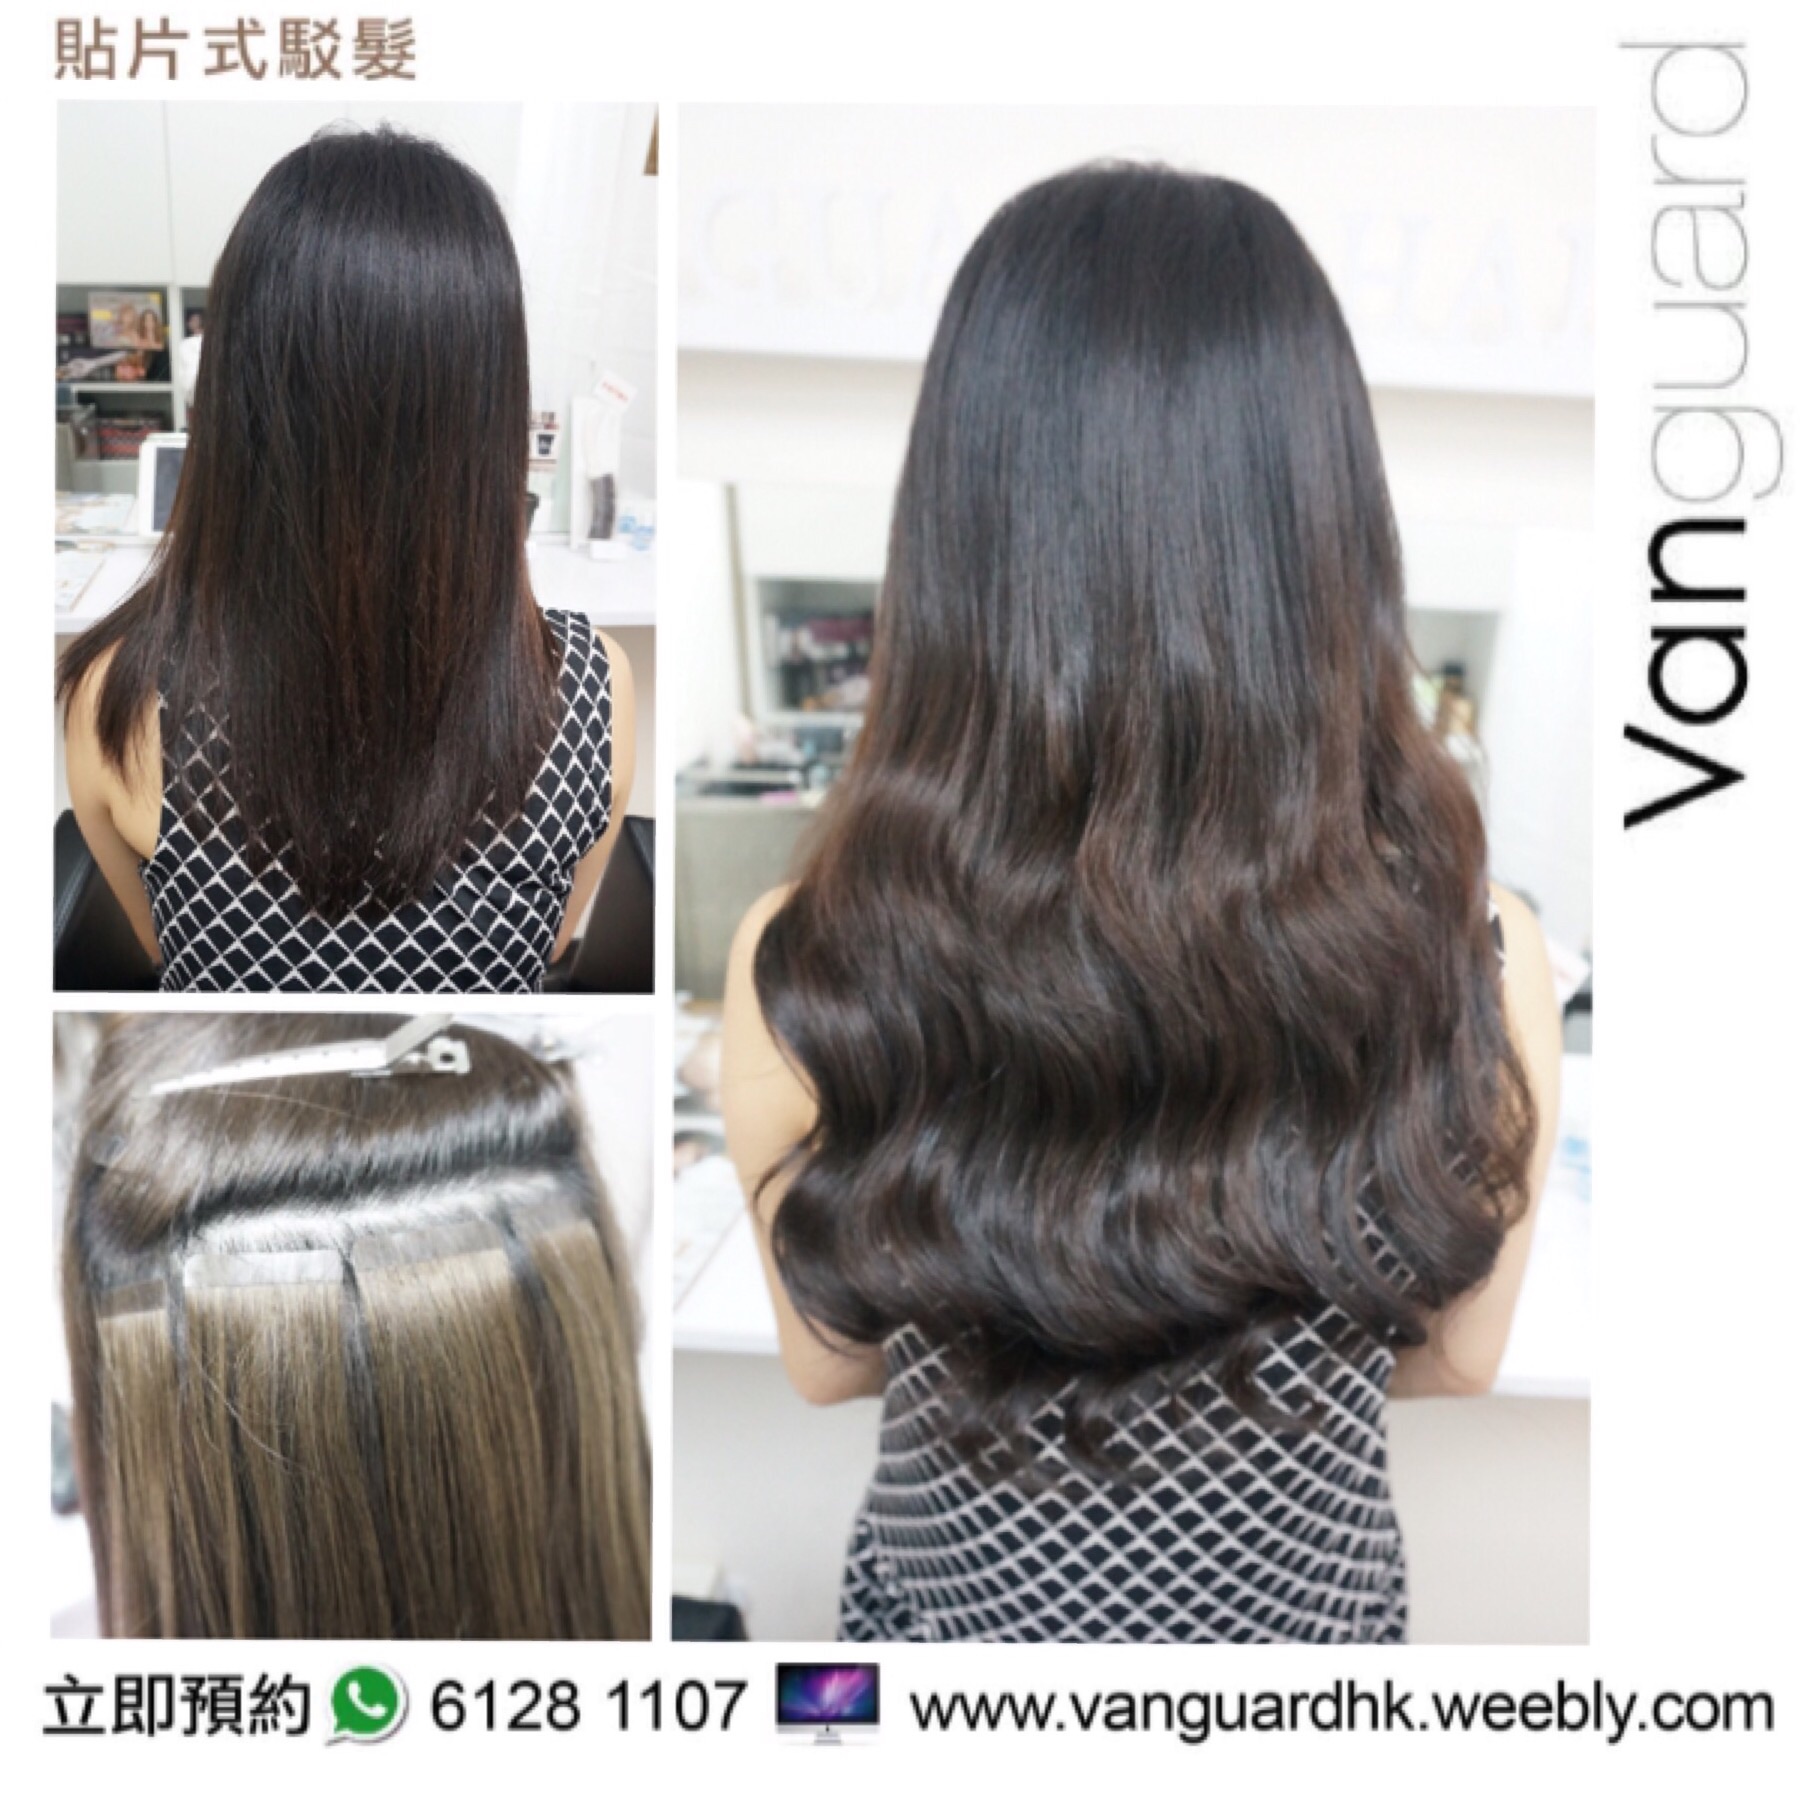 香港美髮網 HK Hair Salon 髮型屋Salon / 髮型師: Vanguard HK 無痕貼片式駁髮專門店